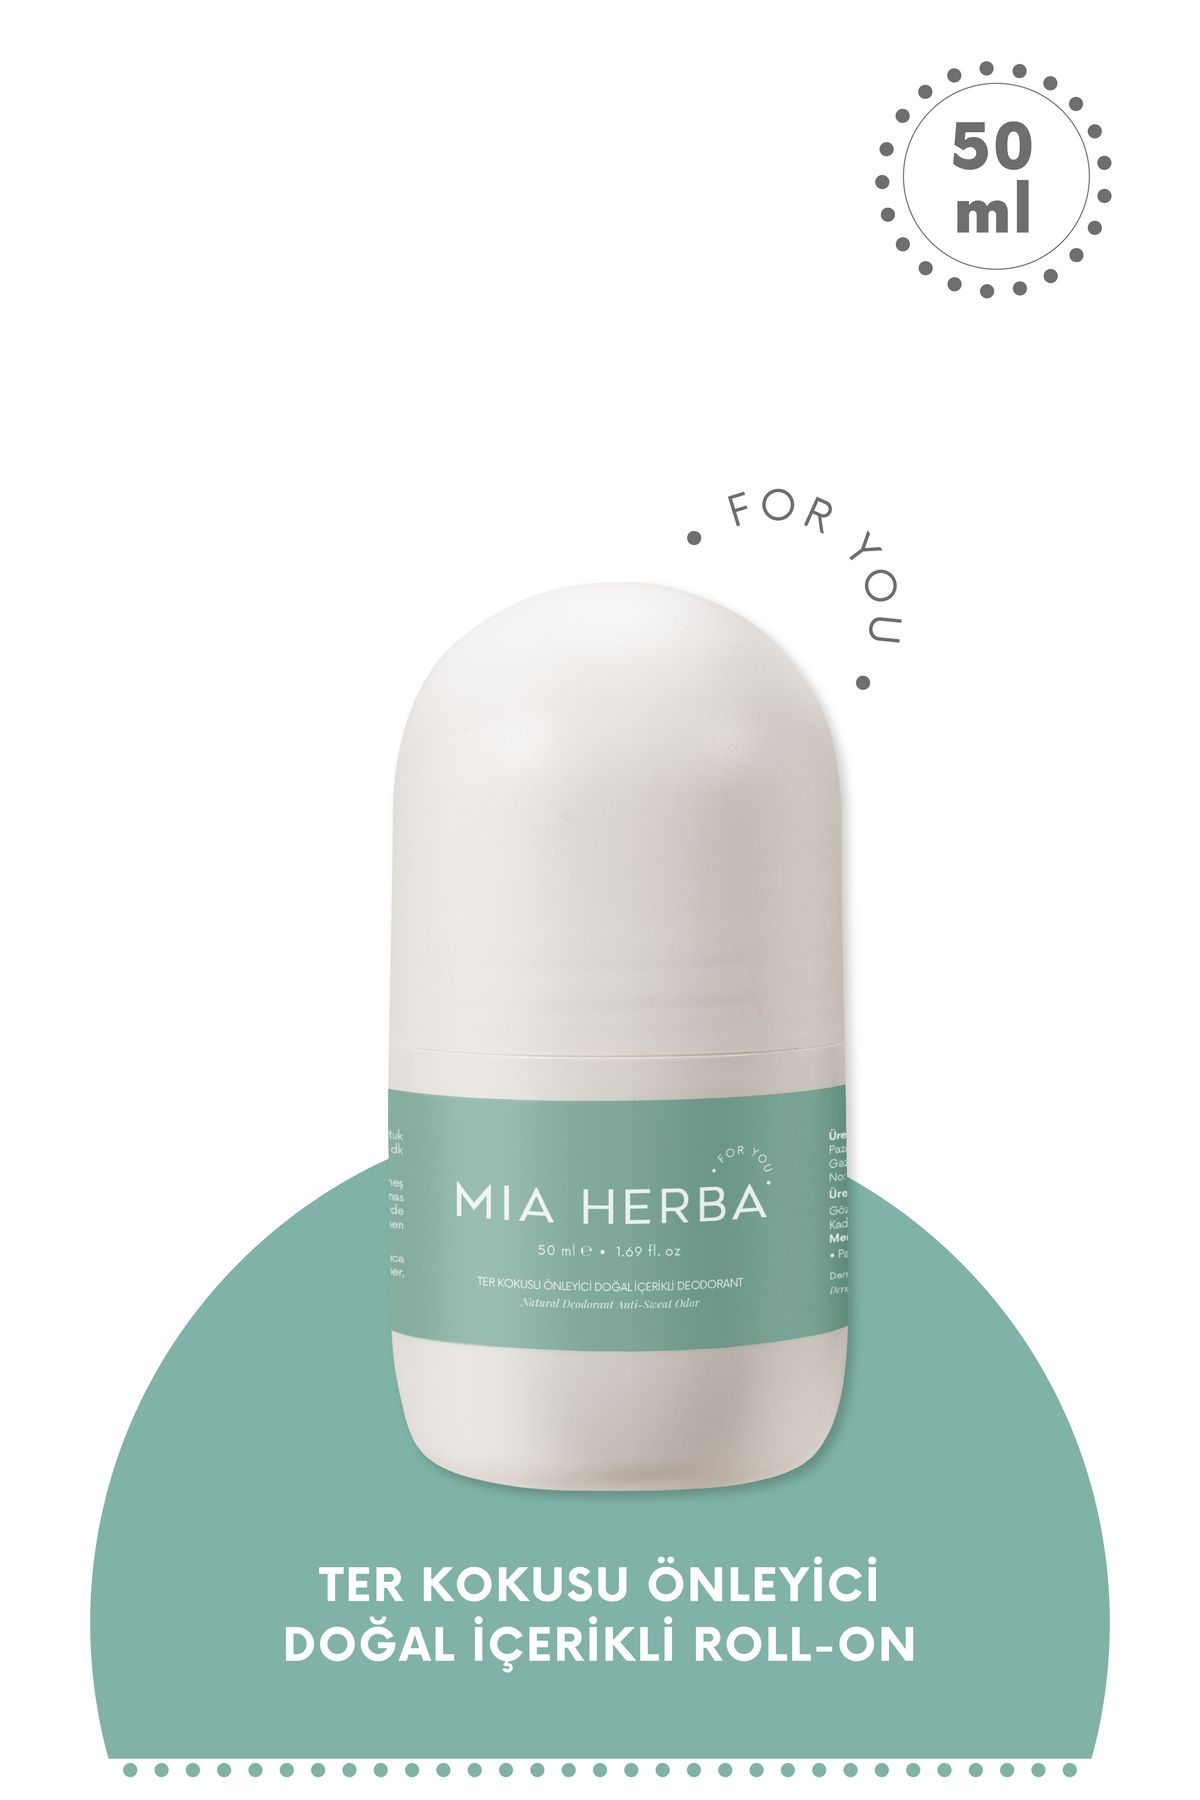 Mia Herba Ter Kokusu Önleyici Doğal İçerikli Deodorant 50 ml